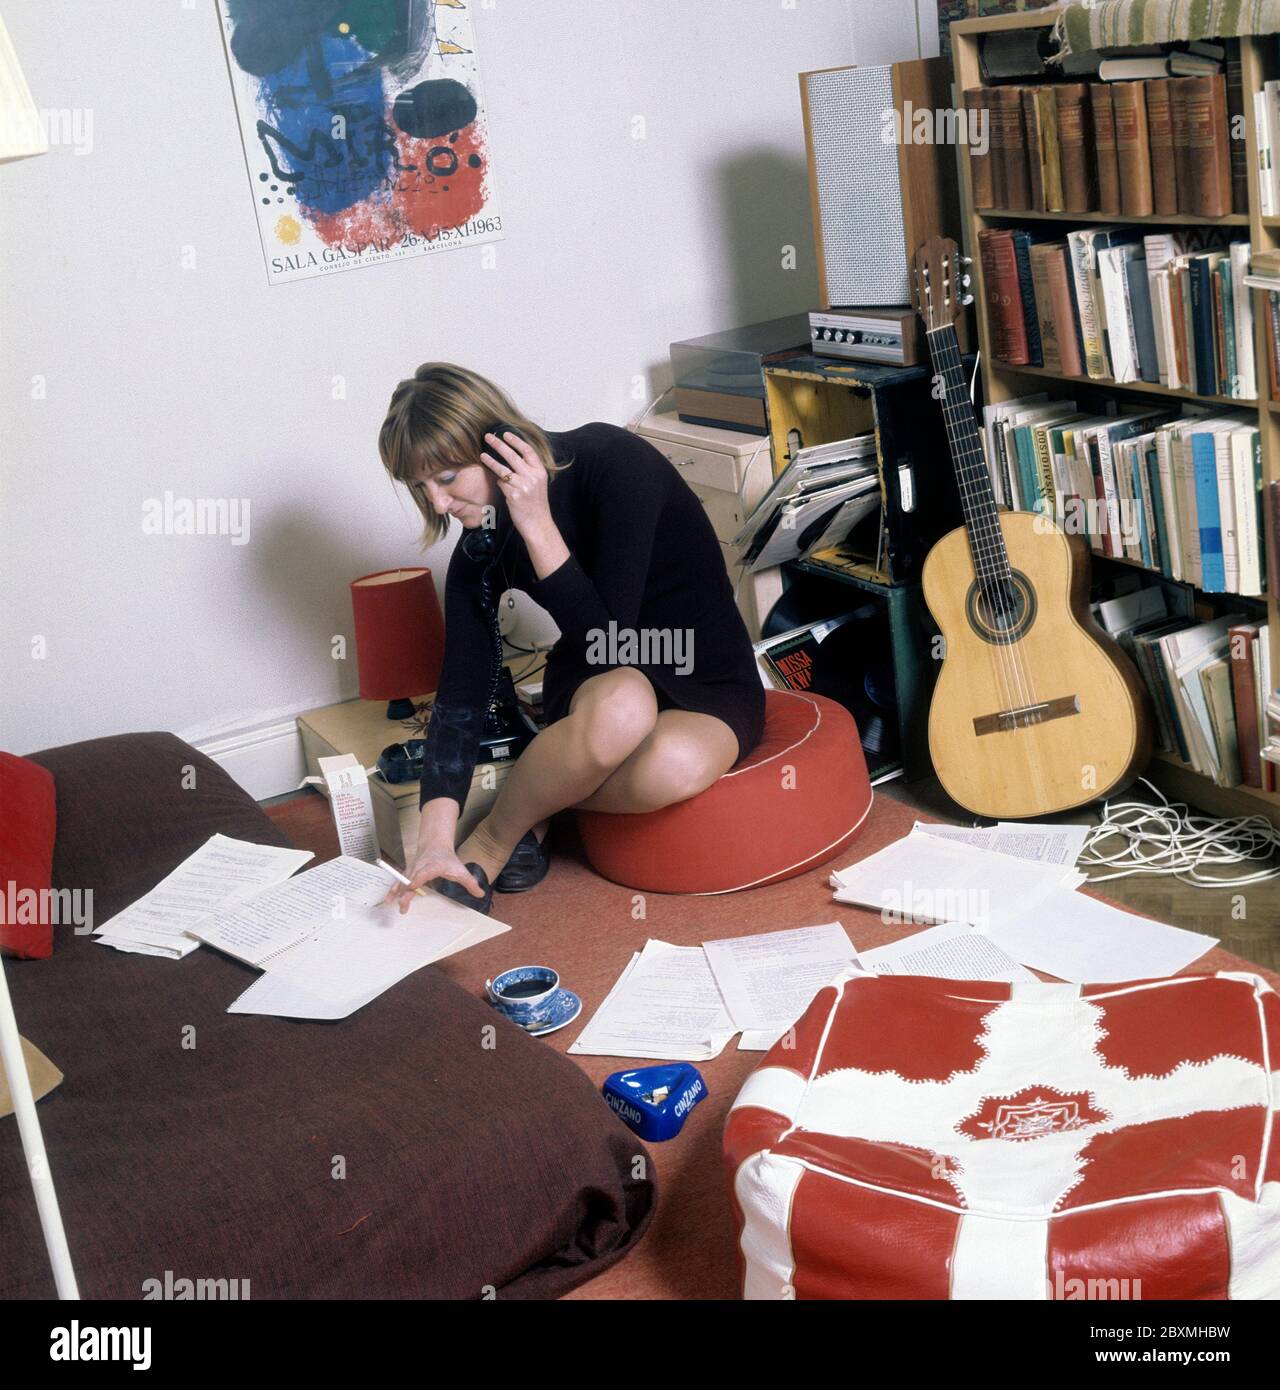 Dans les années 1960. Une jeune femme dans son appartement. Un étudiant à la maison avec une bibliothèque pleine de livres et de littérature. Tout en parlant au téléphone et en fume une cigarette, elle a un regard sur certains documents qui sont étalées sur le sol et le lit. Photo prise en novembre 21 1968. Kristoffersson réf. CV51-1 Banque D'Images